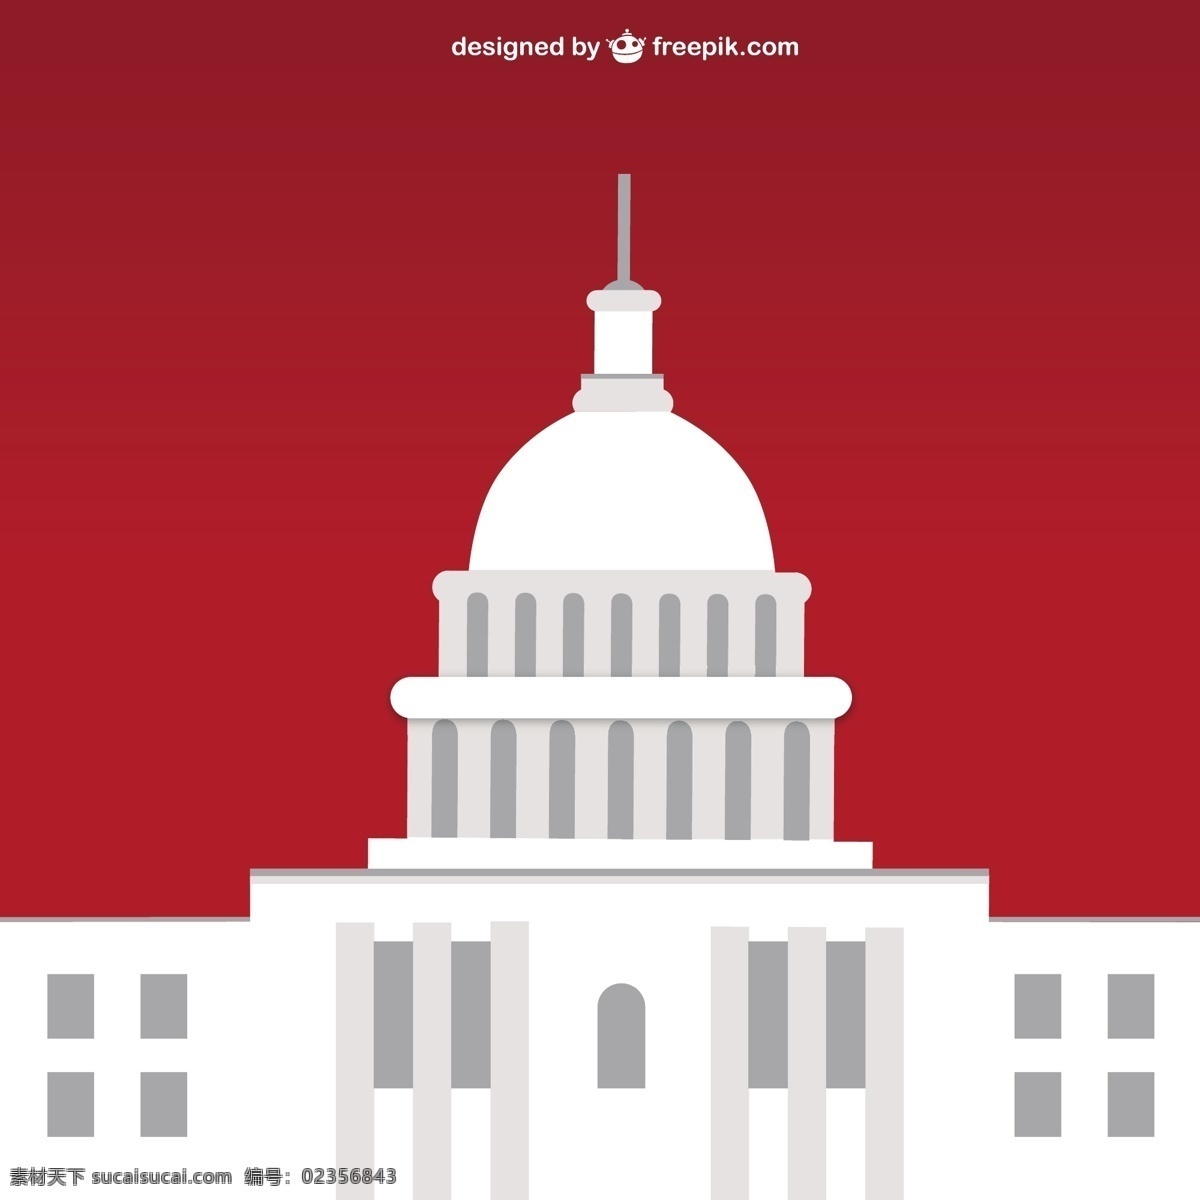 红色 背景 白宫 房子 星 卡 标志 模板 红 图形 红色背景 建筑 平面设计 白色背景 明信片 插图 设计元素